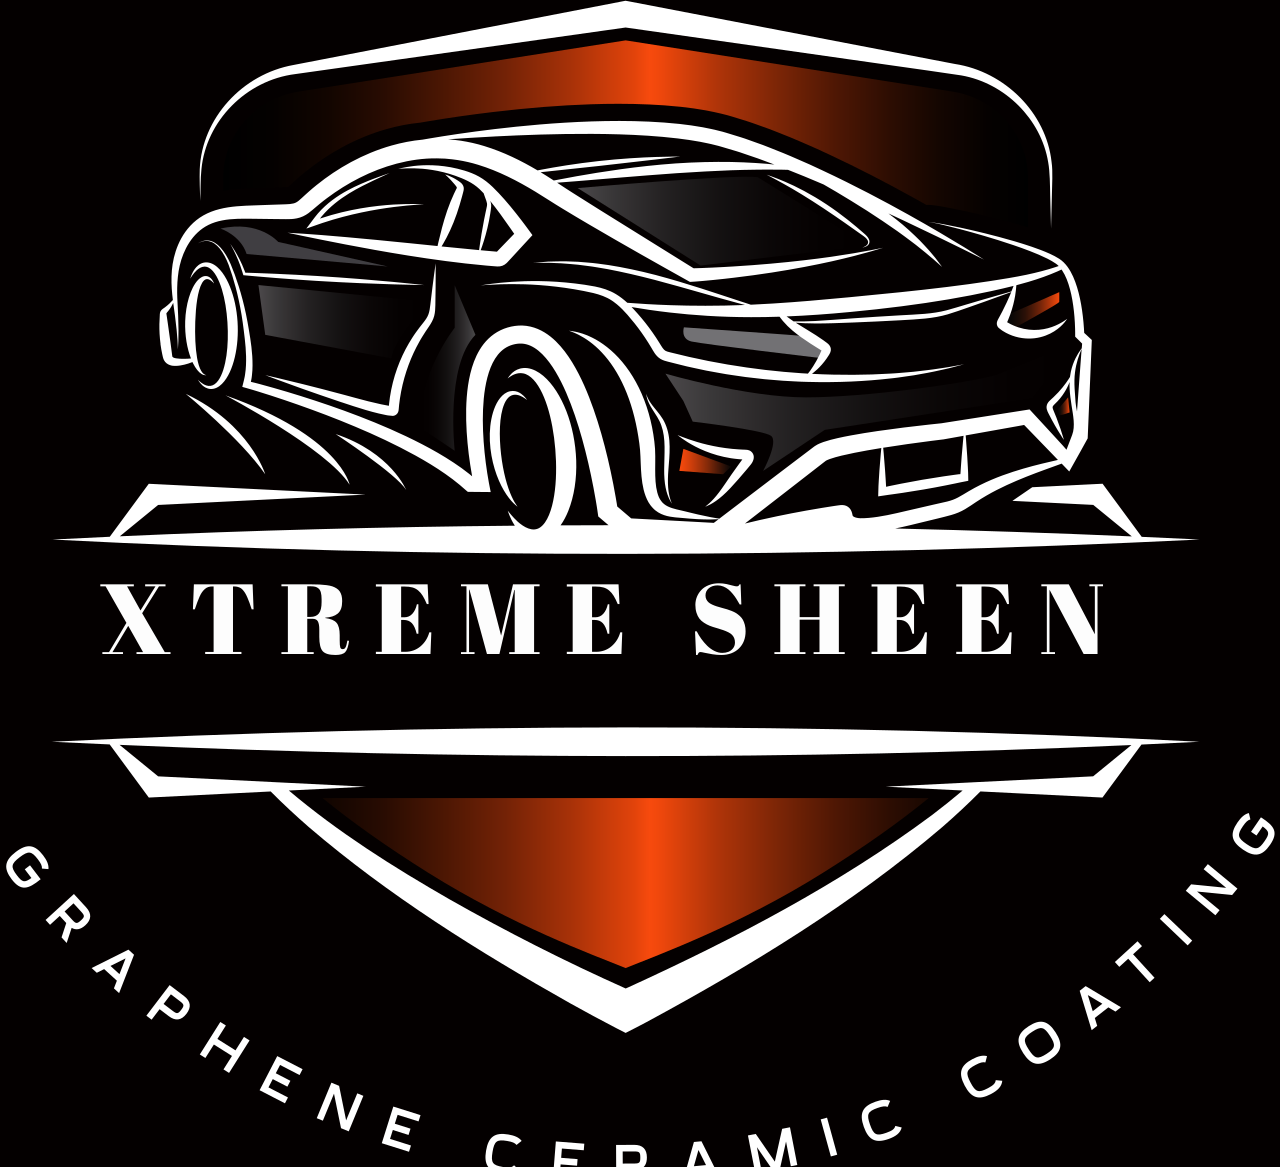   Xtreme Sheen's logo